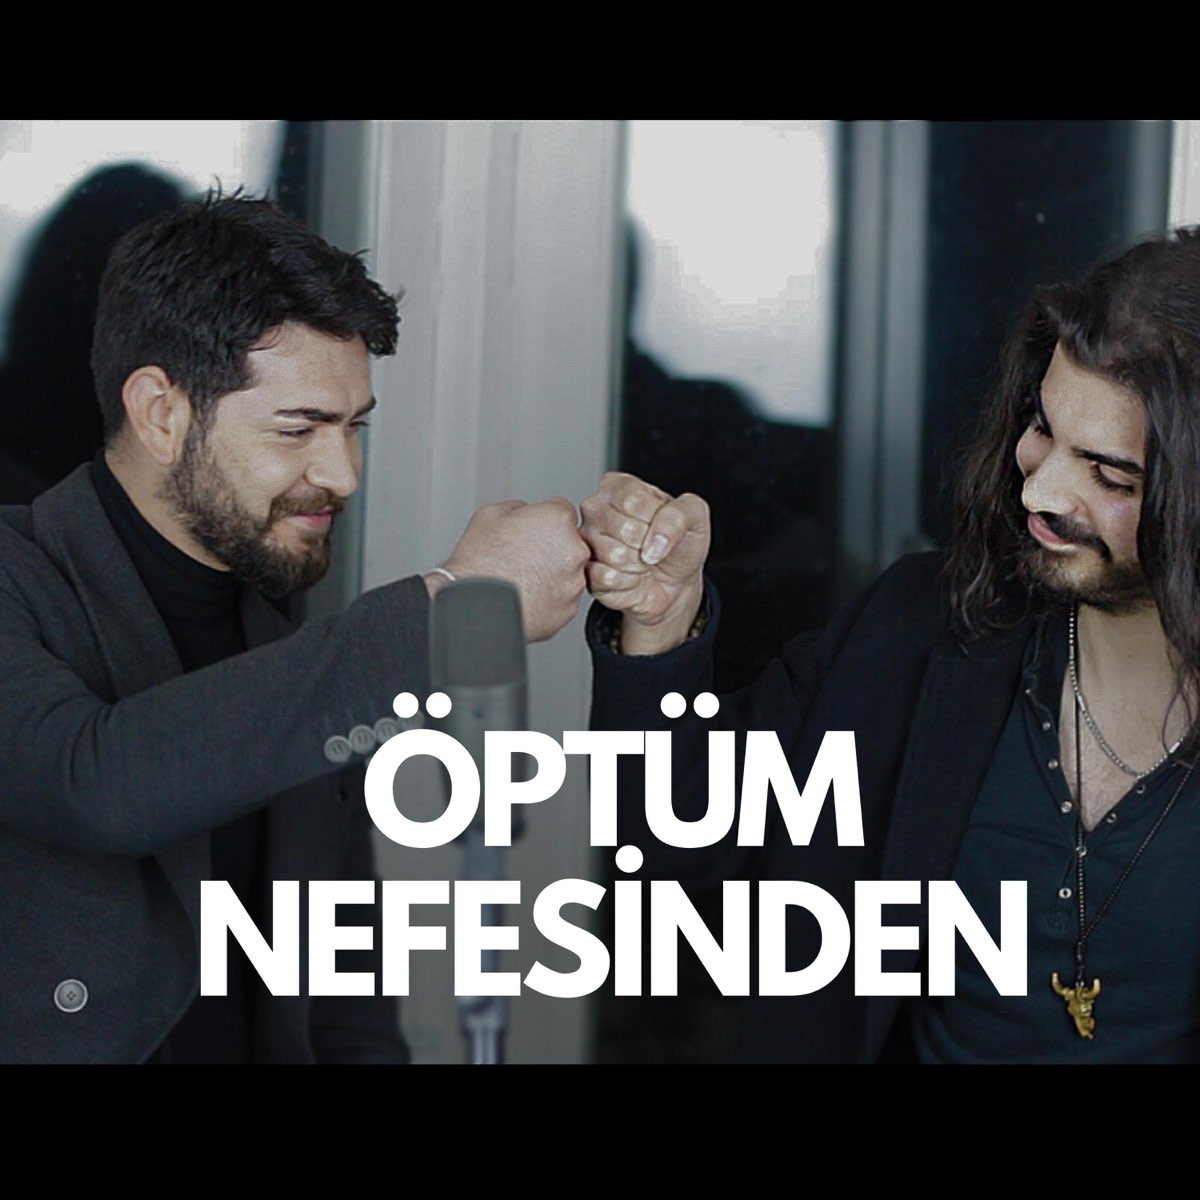 Öptüm Nefesinden (feat. Barış Baktaş) - Single - Album by Alp Keskin -  Apple Music